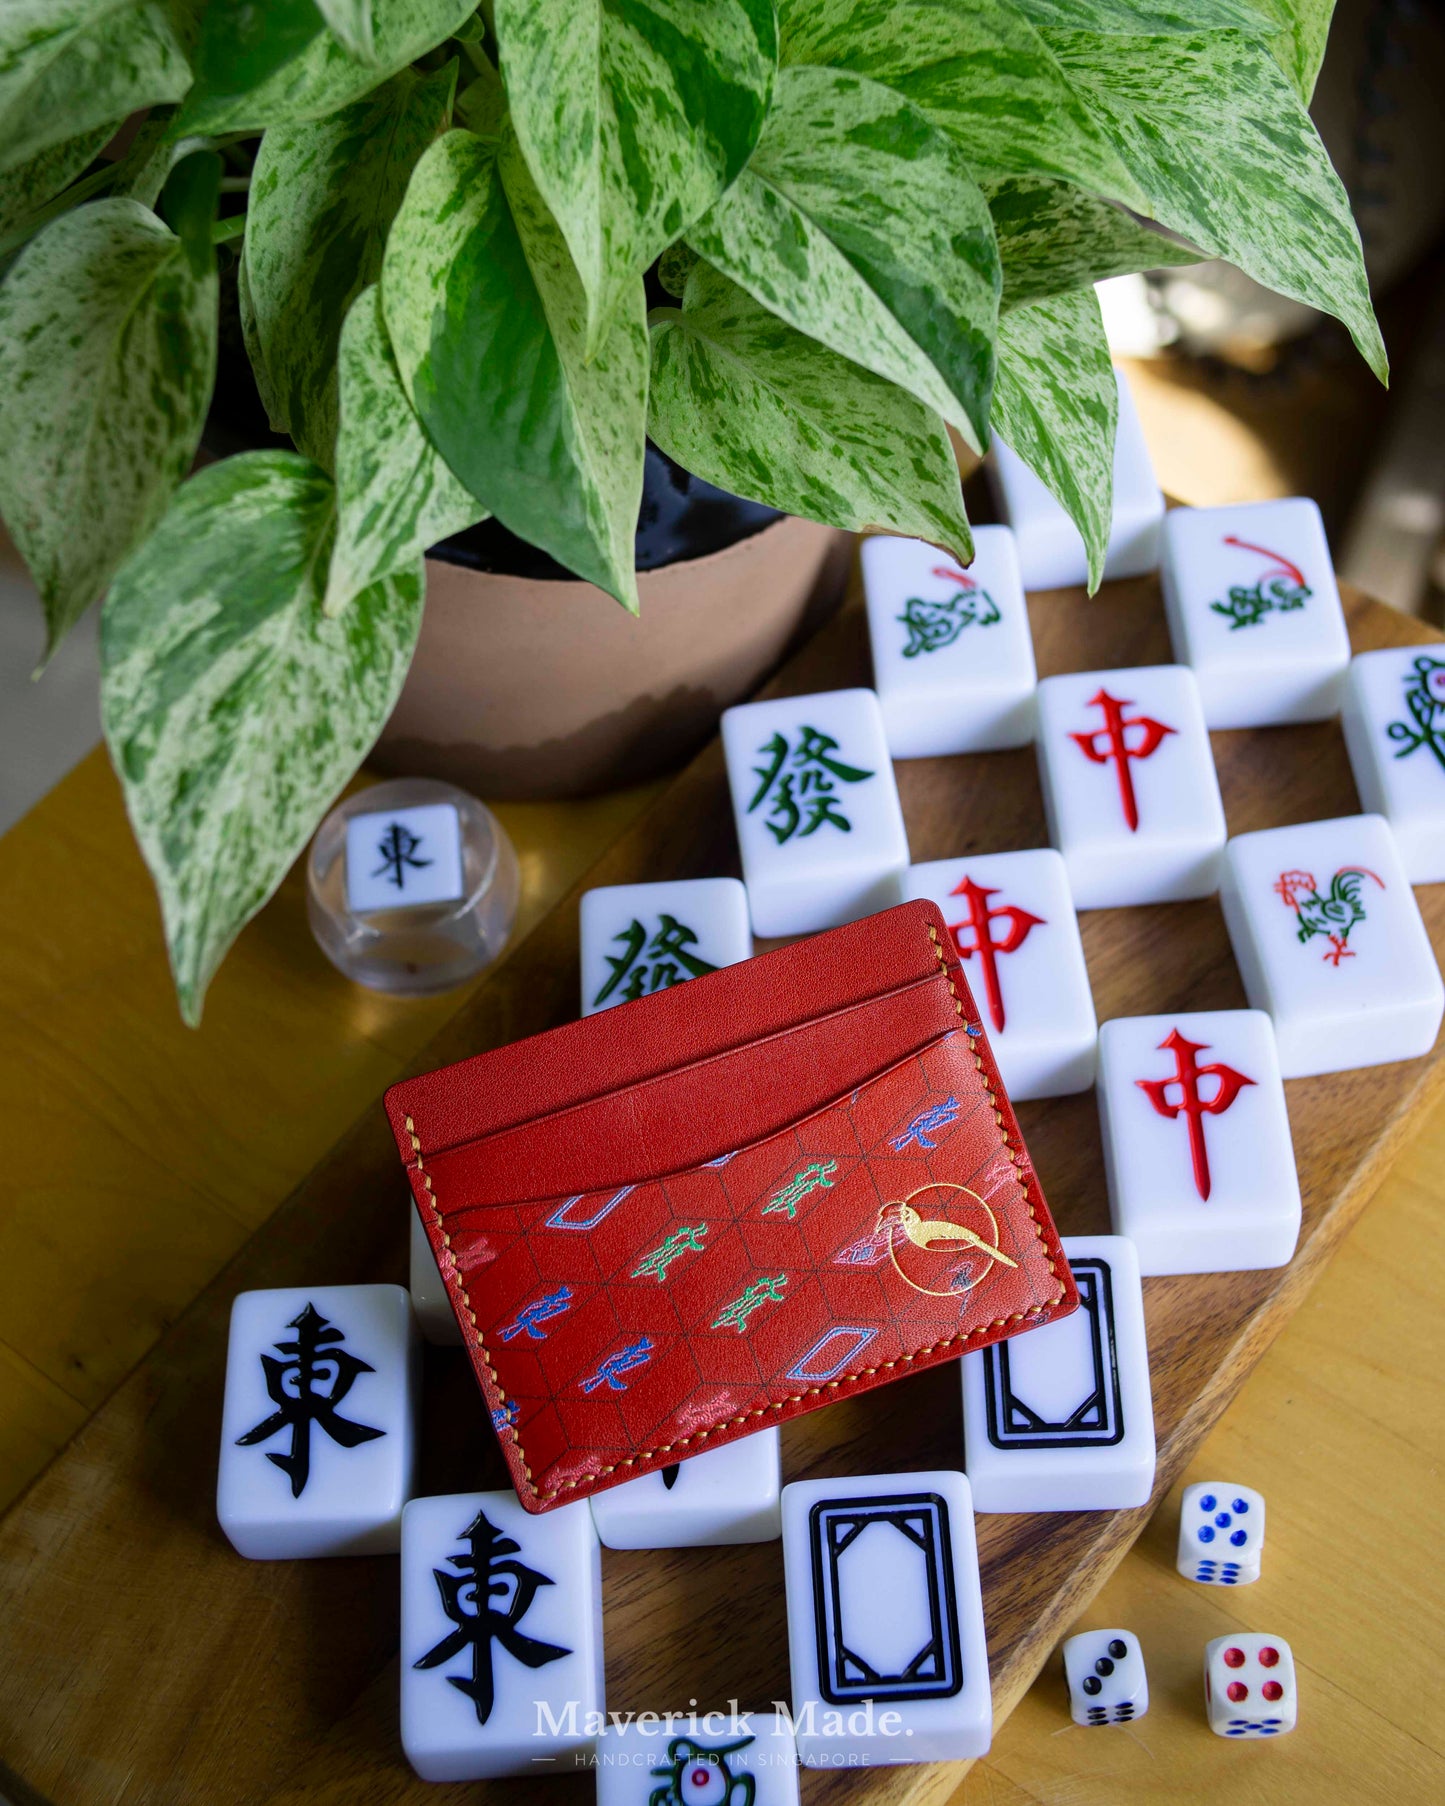 The Mahjong Collection